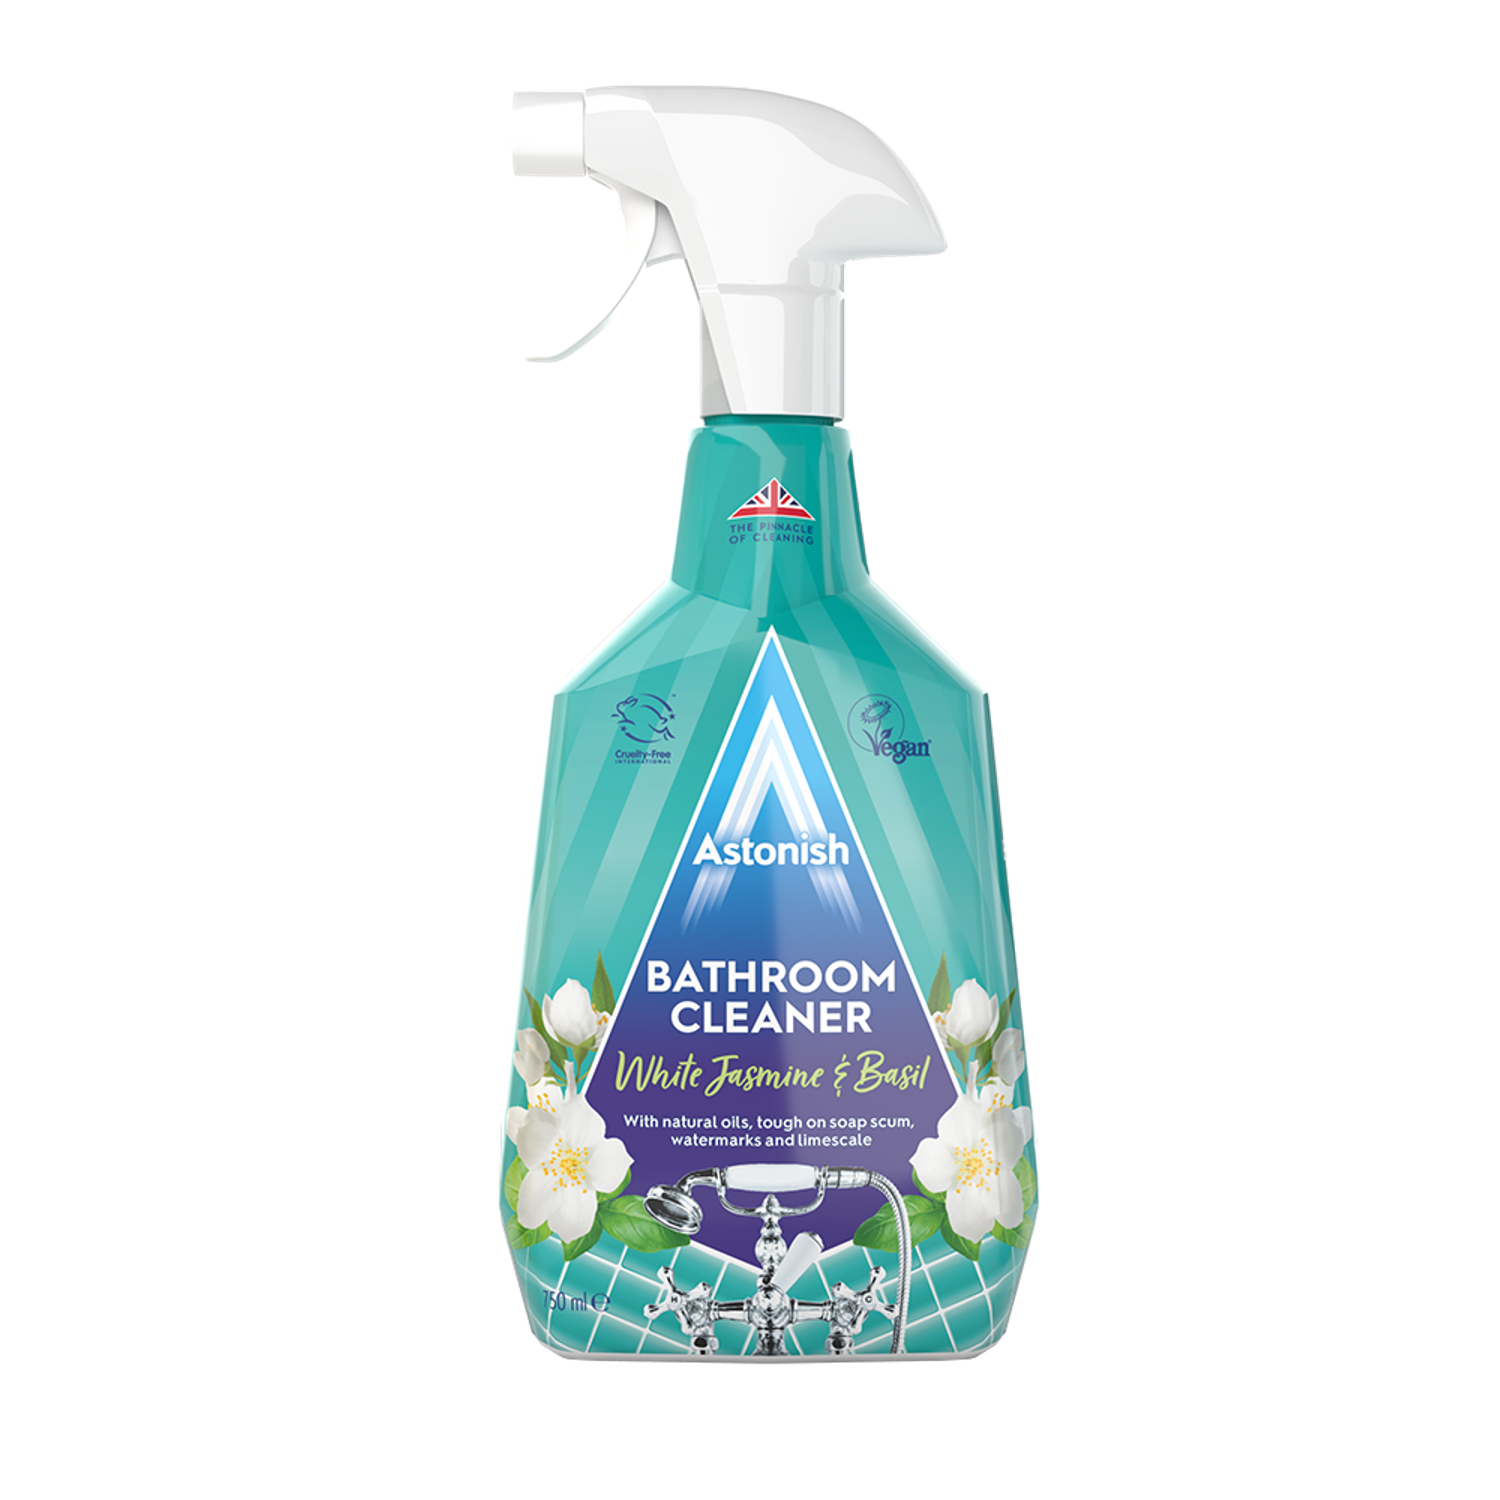 Очиститель Astonish для ванных комнат c ароматом жасмина и базилика Bathroom Cleaner - фото 1